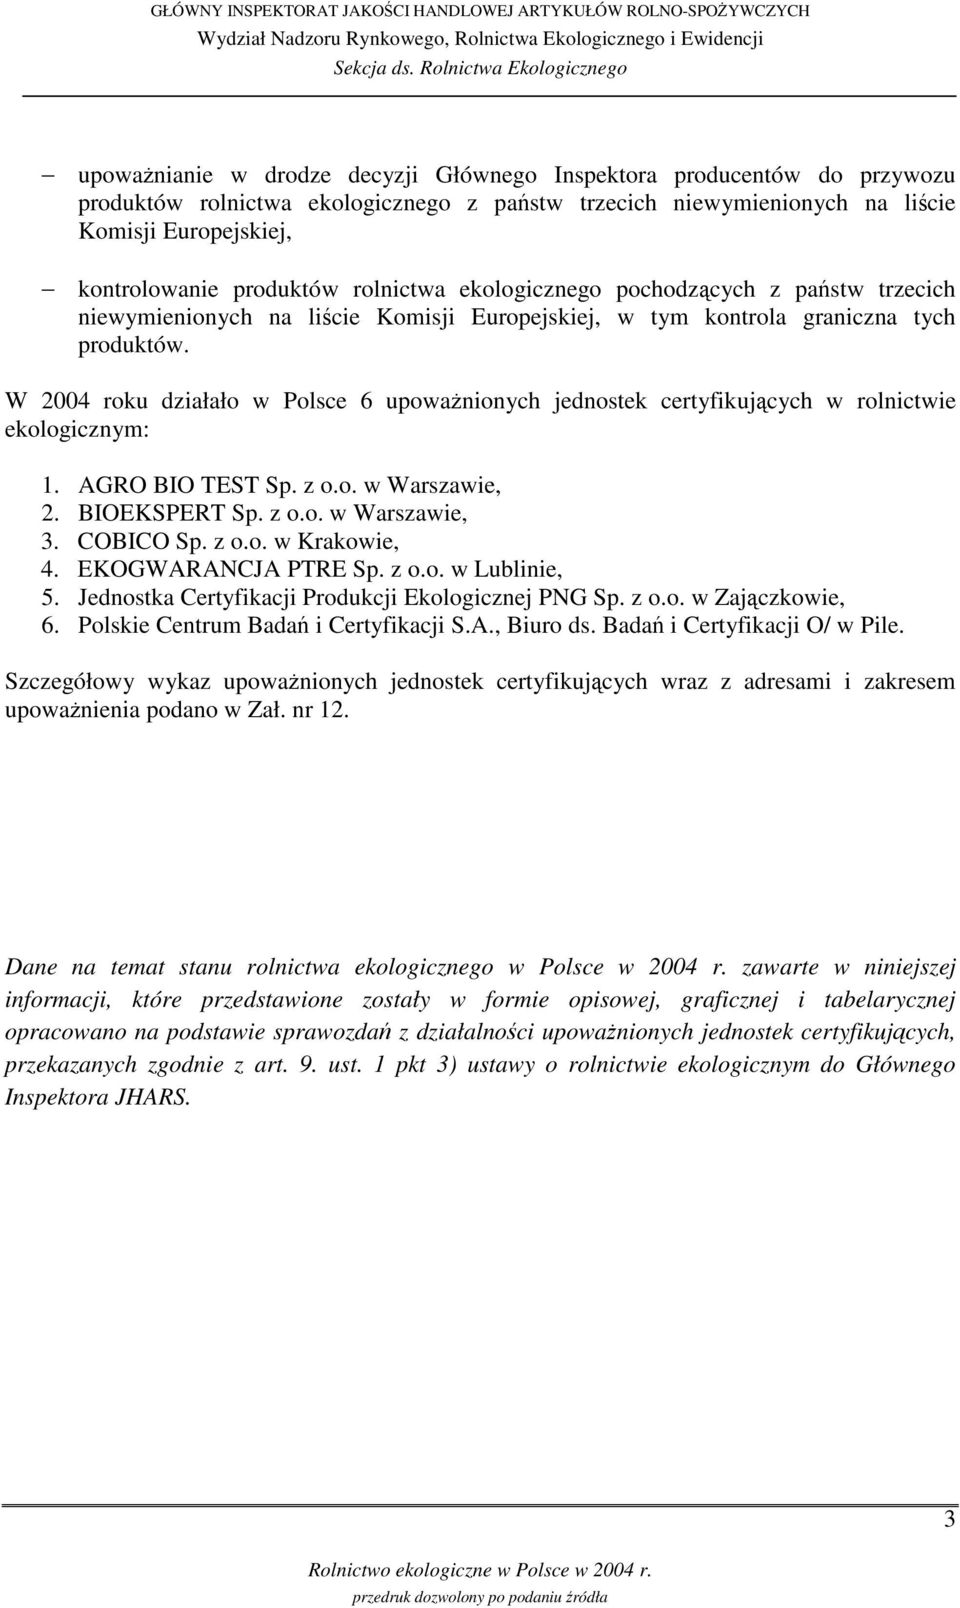 W 2004 roku działało w Polsce 6 upowanionych jednostek certyfikujcych w rolnictwie ekologicznym: 1. AGRO BIO TEST Sp. z o.o. w Warszawie, 2. BIOEKSPERT Sp. z o.o. w Warszawie, 3. COBICO Sp. z o.o. w Krakowie, 4.